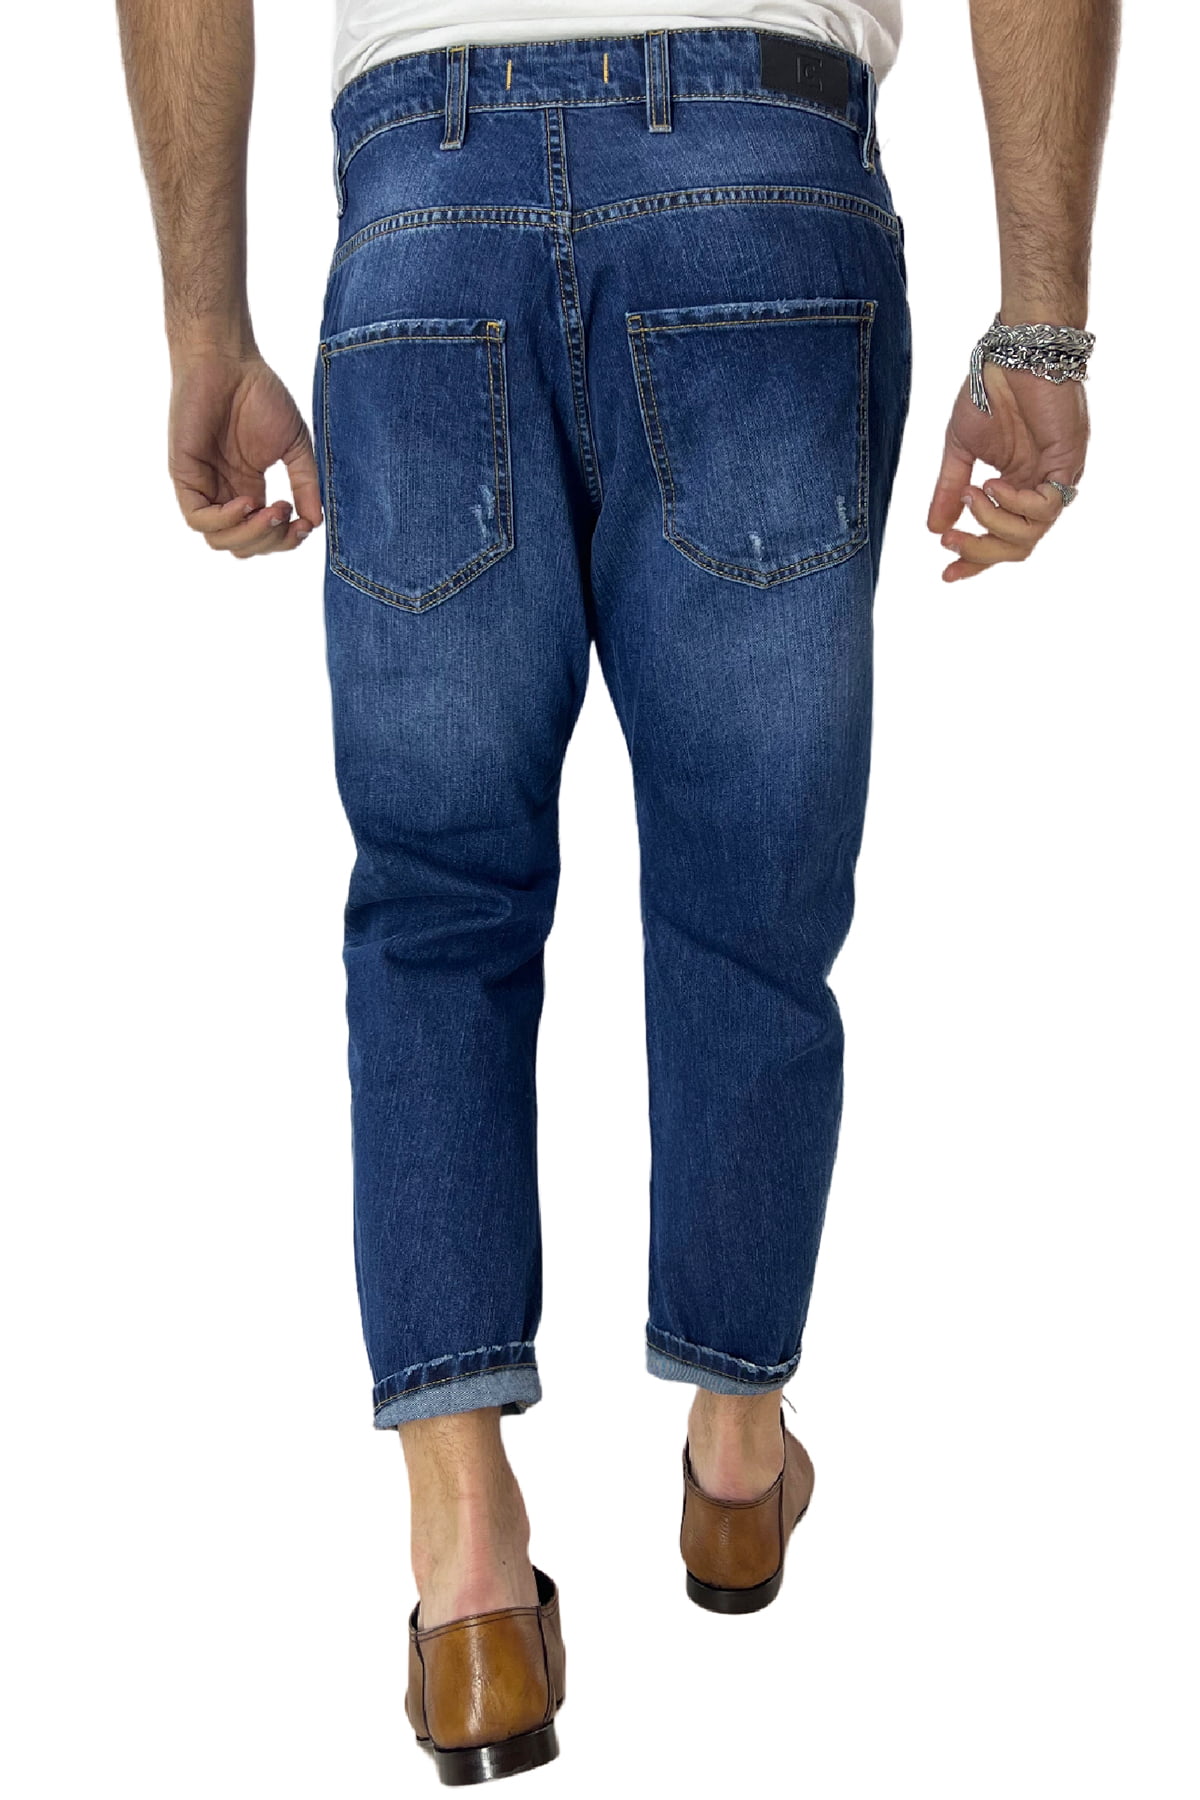 Jeans strappati da uomo con sfumature bianche modello 5 tasche regular fit made in italy